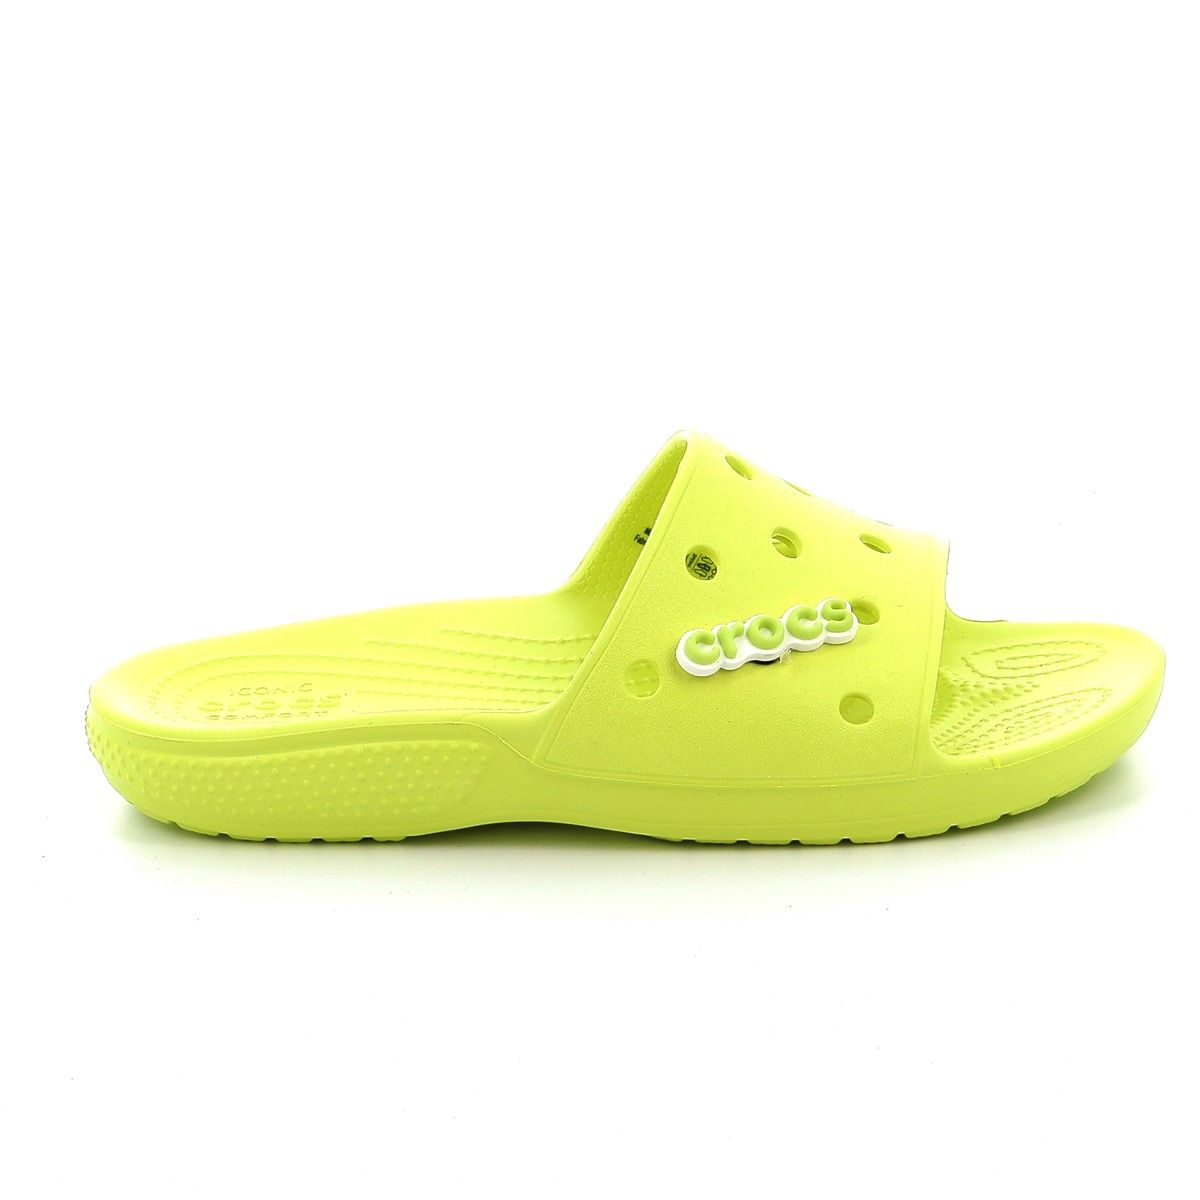 Γυναικεία Σαγιονάρα Crocs Classic Crocs Slide Χρώματος Κίτρινο 206121-738